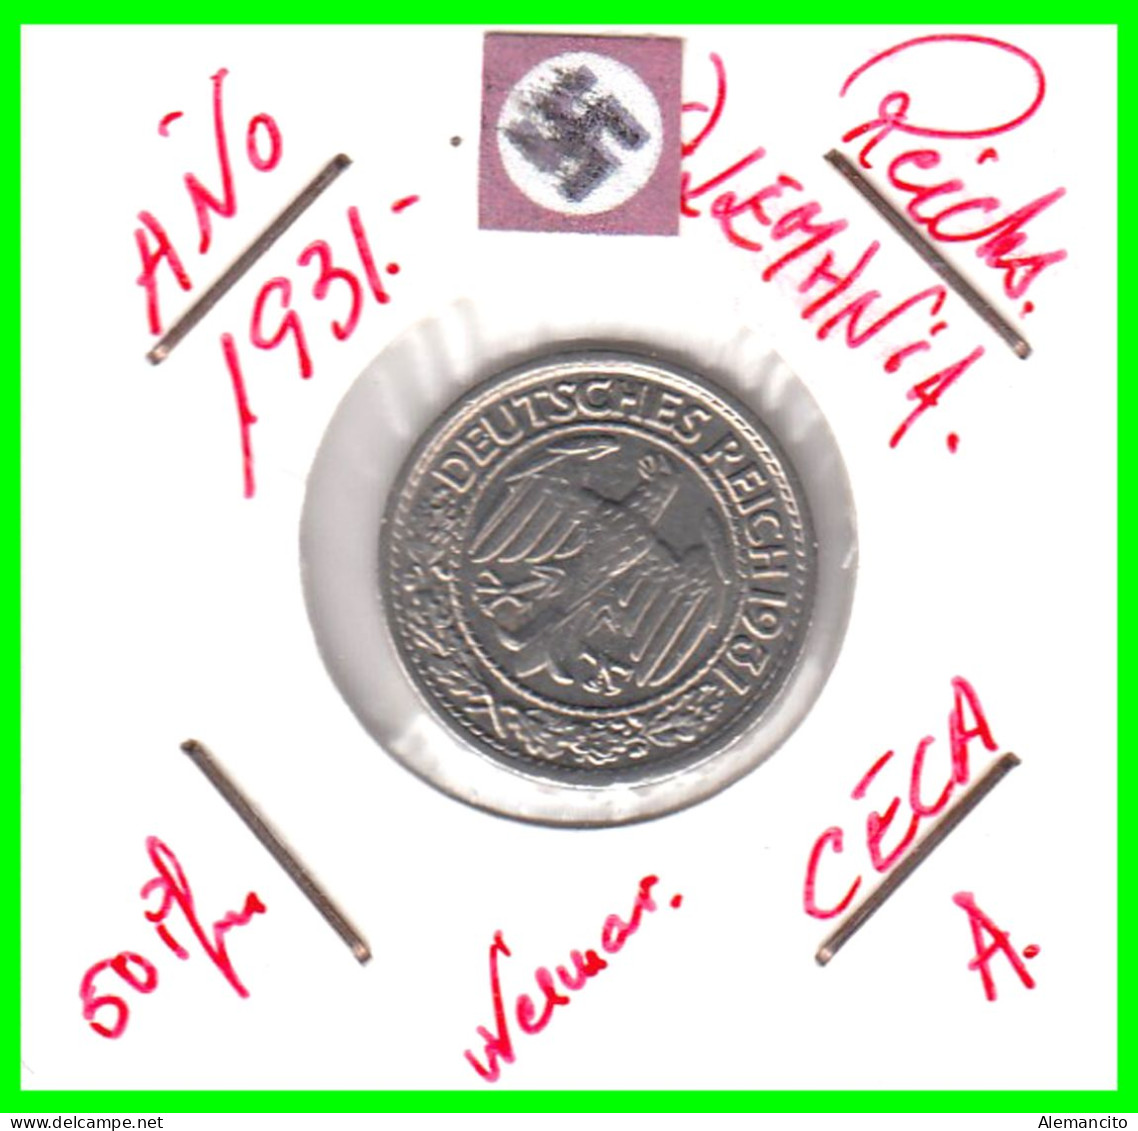 GERMANY REPÚBLICA DE WEIMAR 50 REICHSPFENNIG ( 1931 CECA - A )  (REICHSPFENNIG KM # 40 - 50 Renten- & 50 Reichspfennig